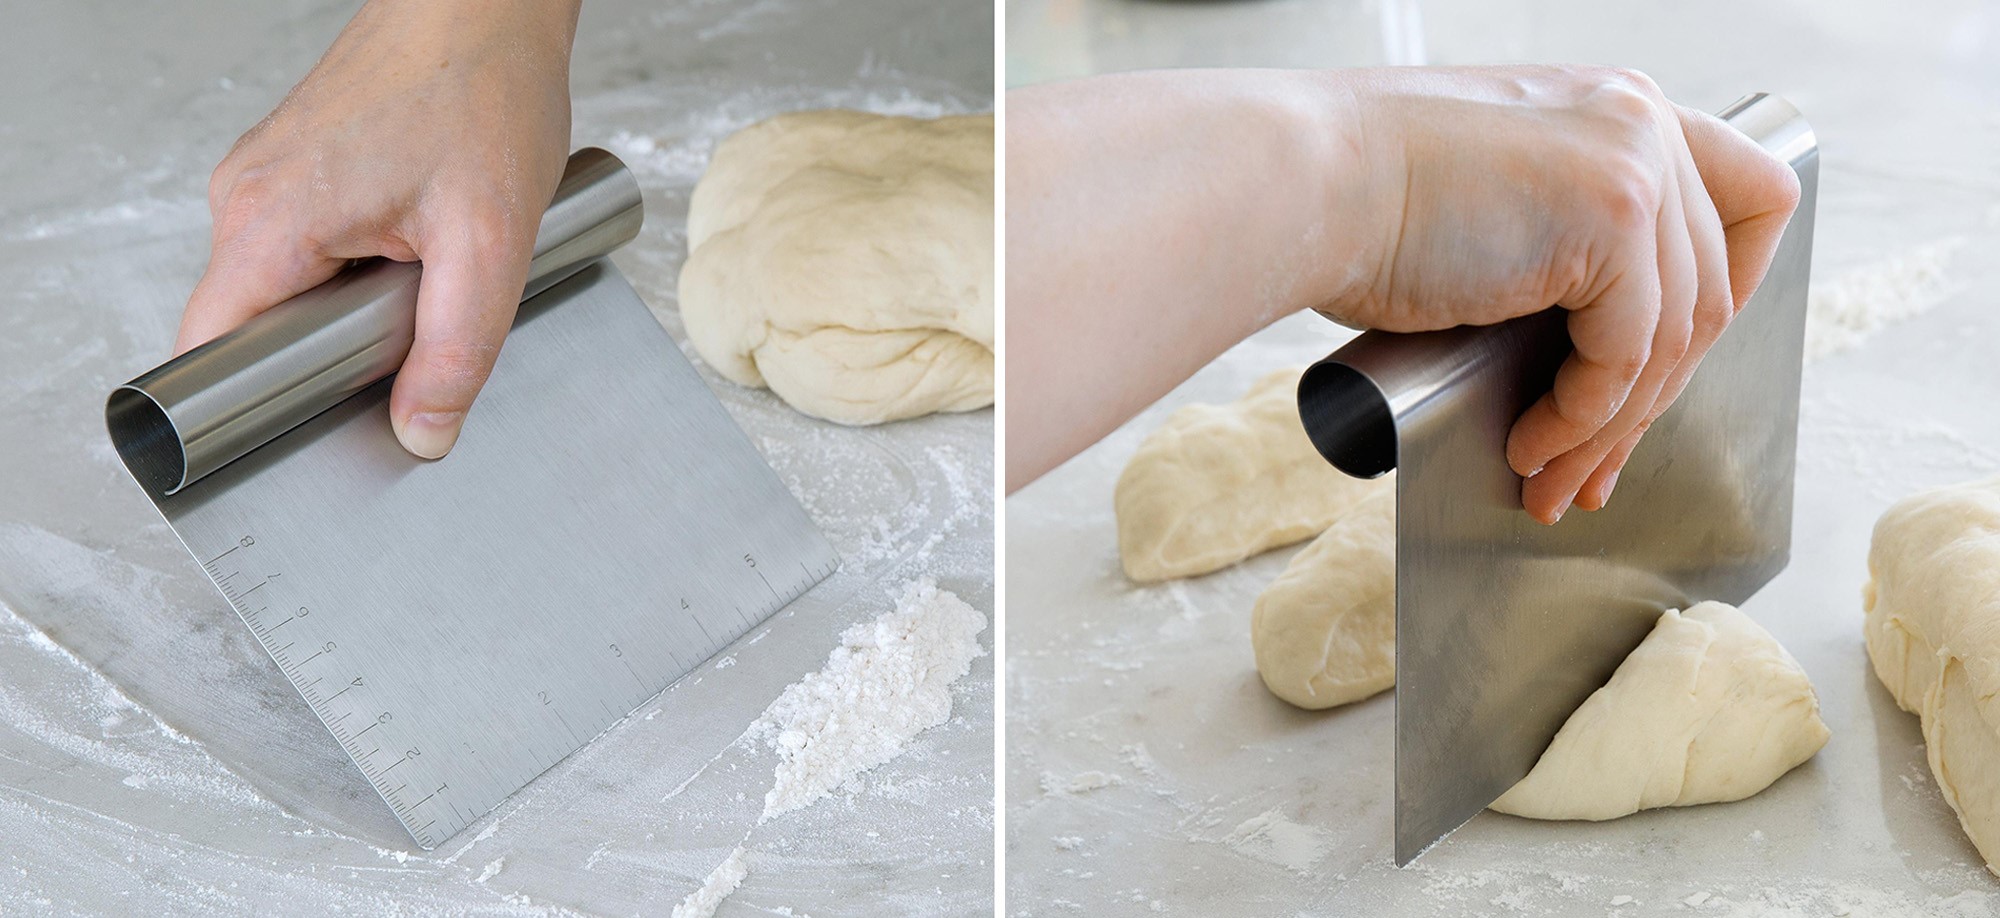 Image de gauche : Personne raclant de la farine avec un racloir à pâte. Image de droite : Personne coupant une boule de pâte à l’aide d’un racloir à pâte.